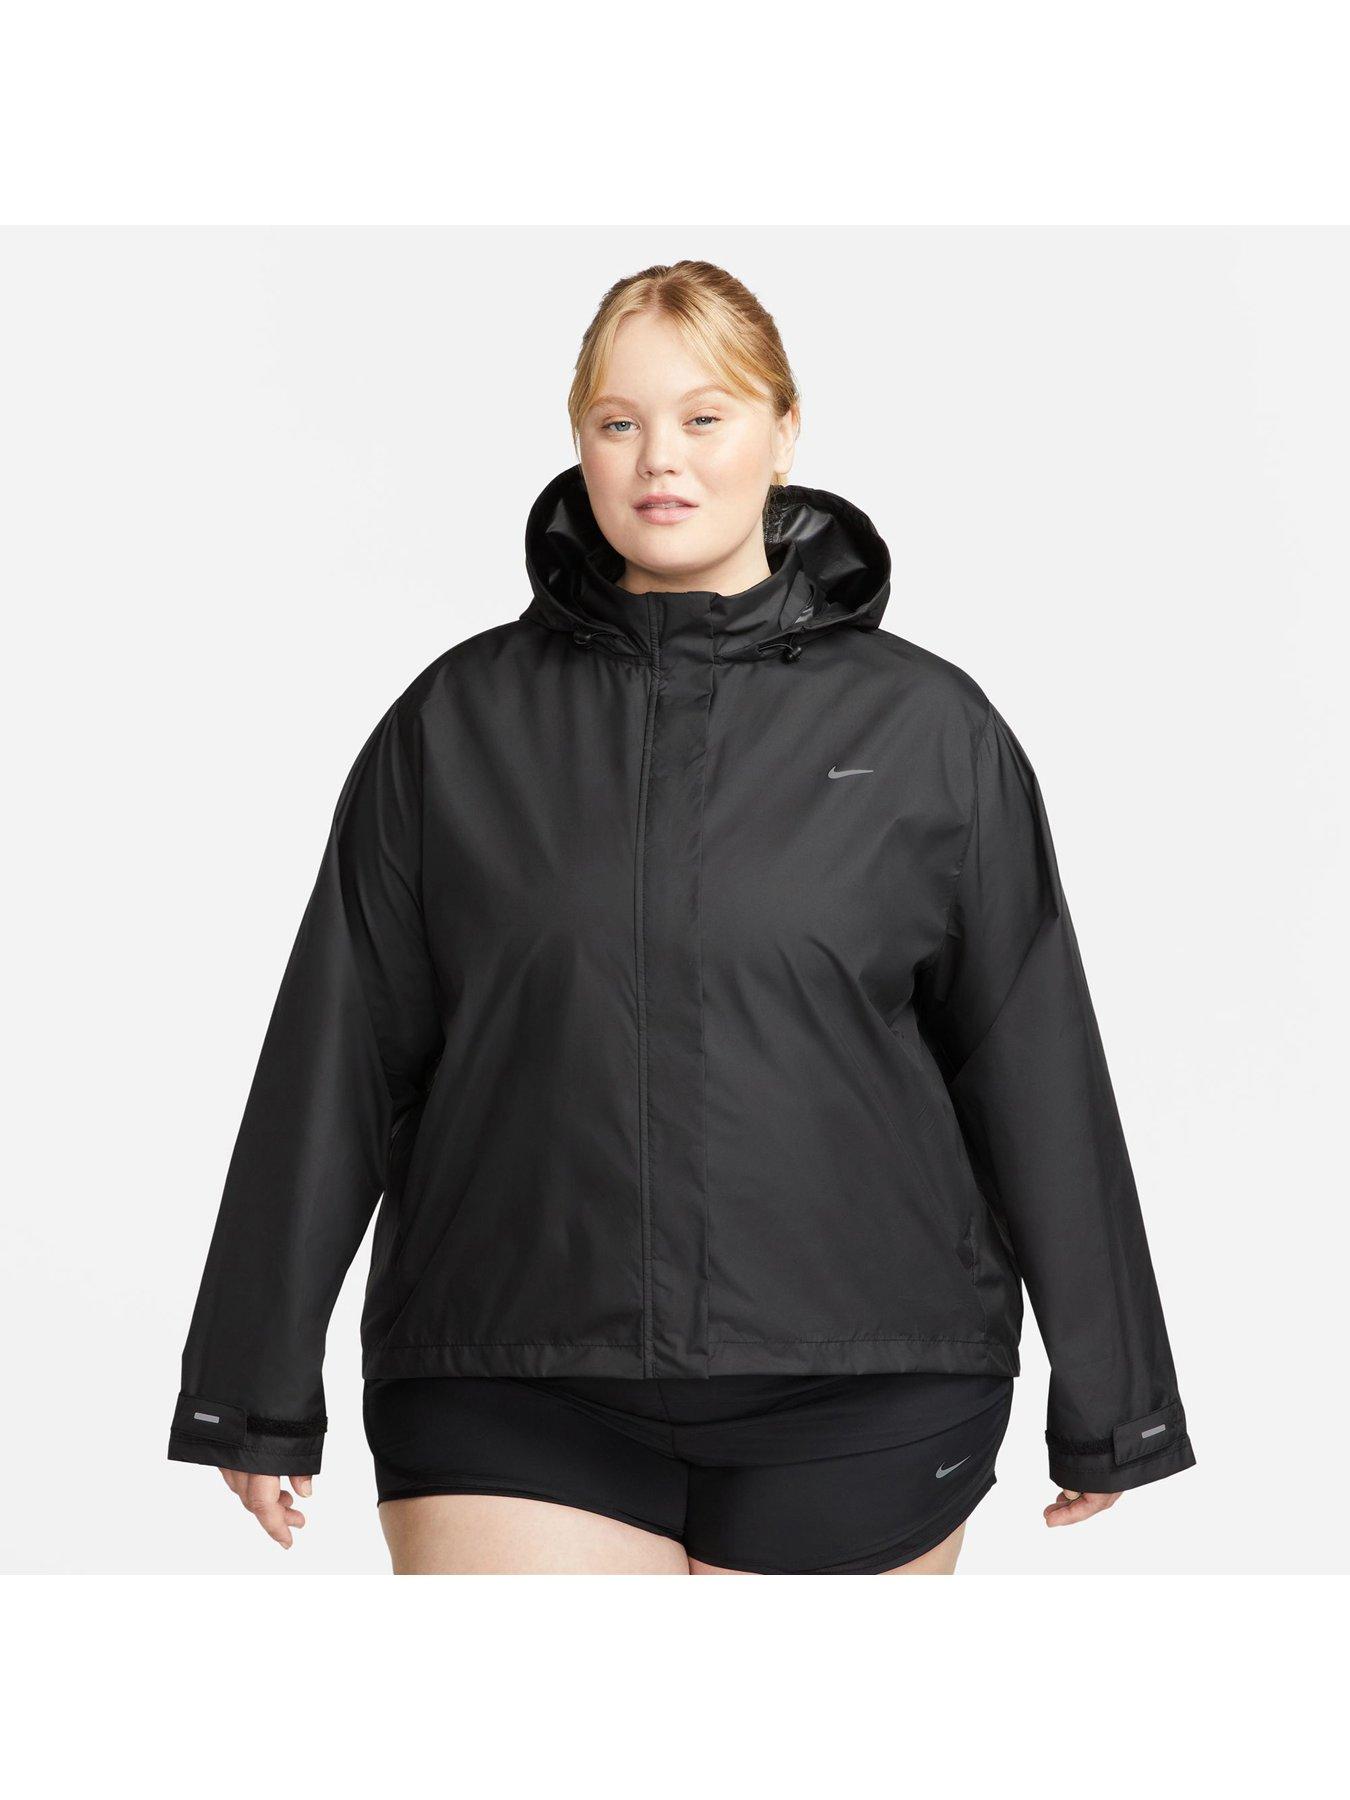 Nike Sportswear Swoosh Puffer PrimaLoft® Women's Therma-FIT Oversized  Hooded Jacket. Nike.com